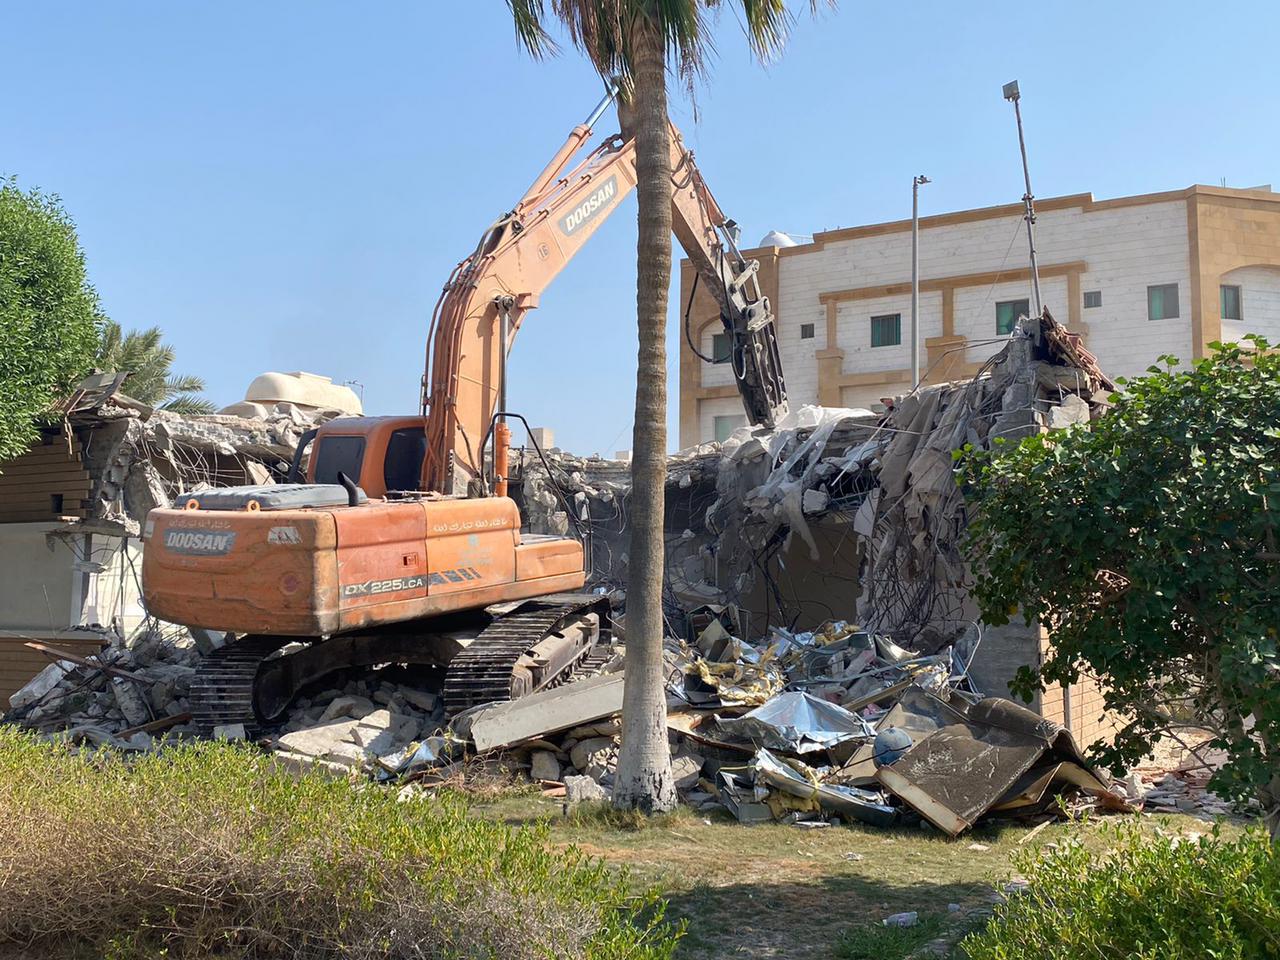 بلدية الخبر: إزالة عدد من المباني المخالفة في حي العقربية